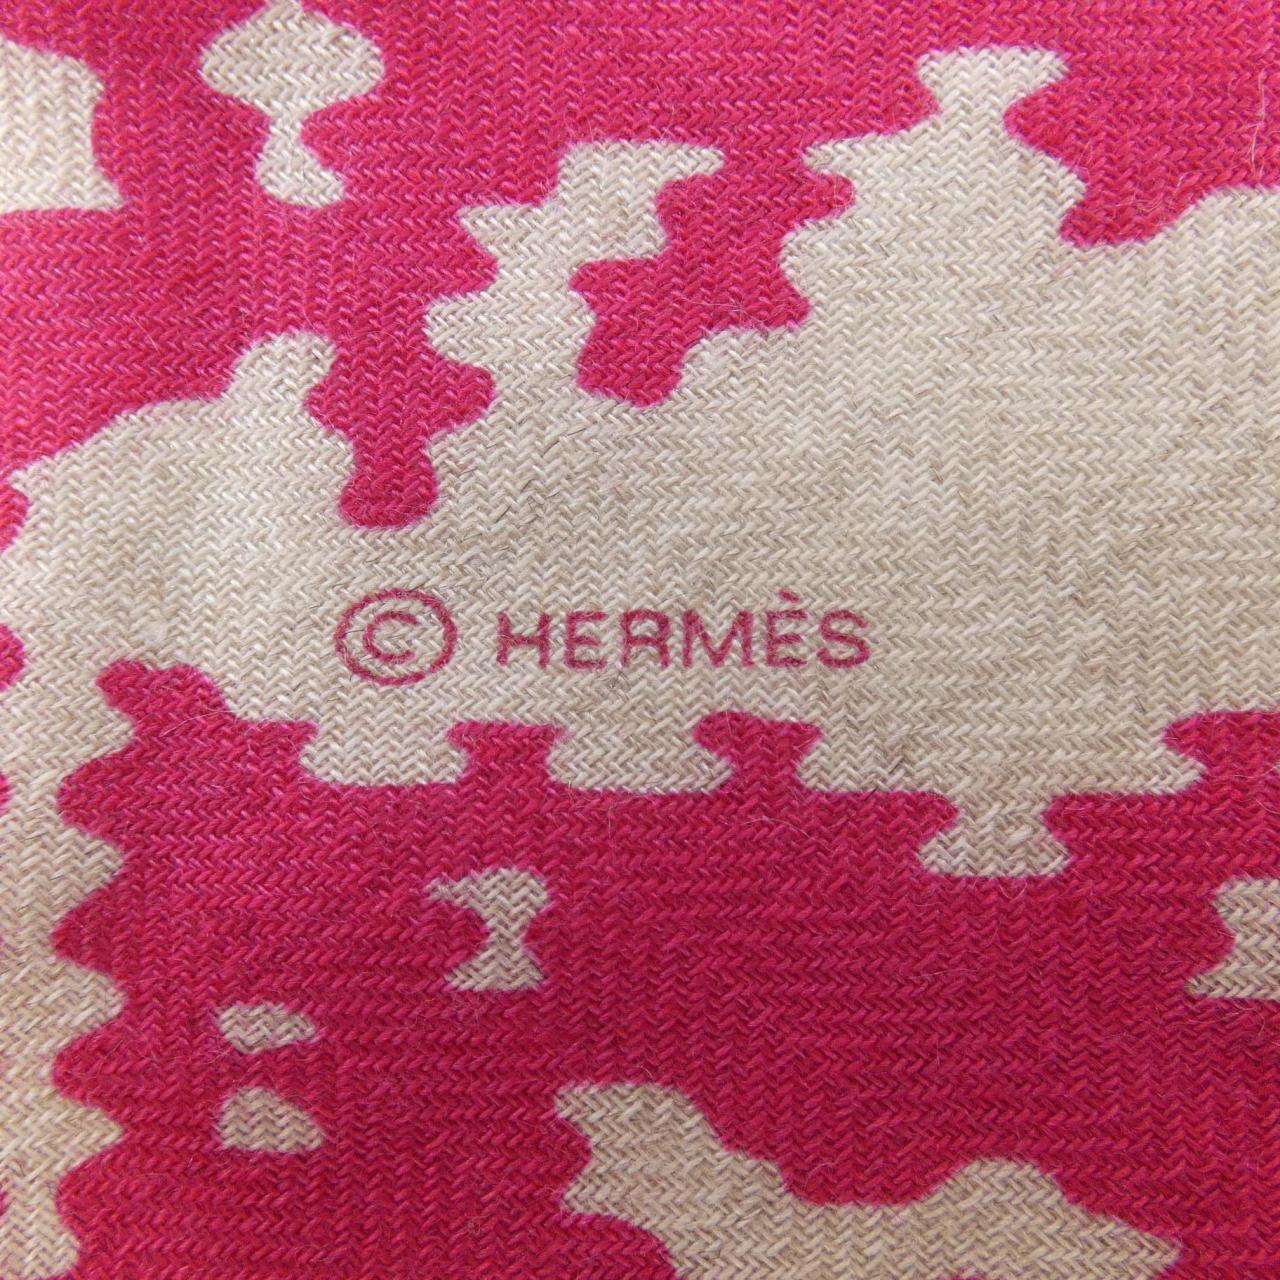 HERMES HERMES STORE